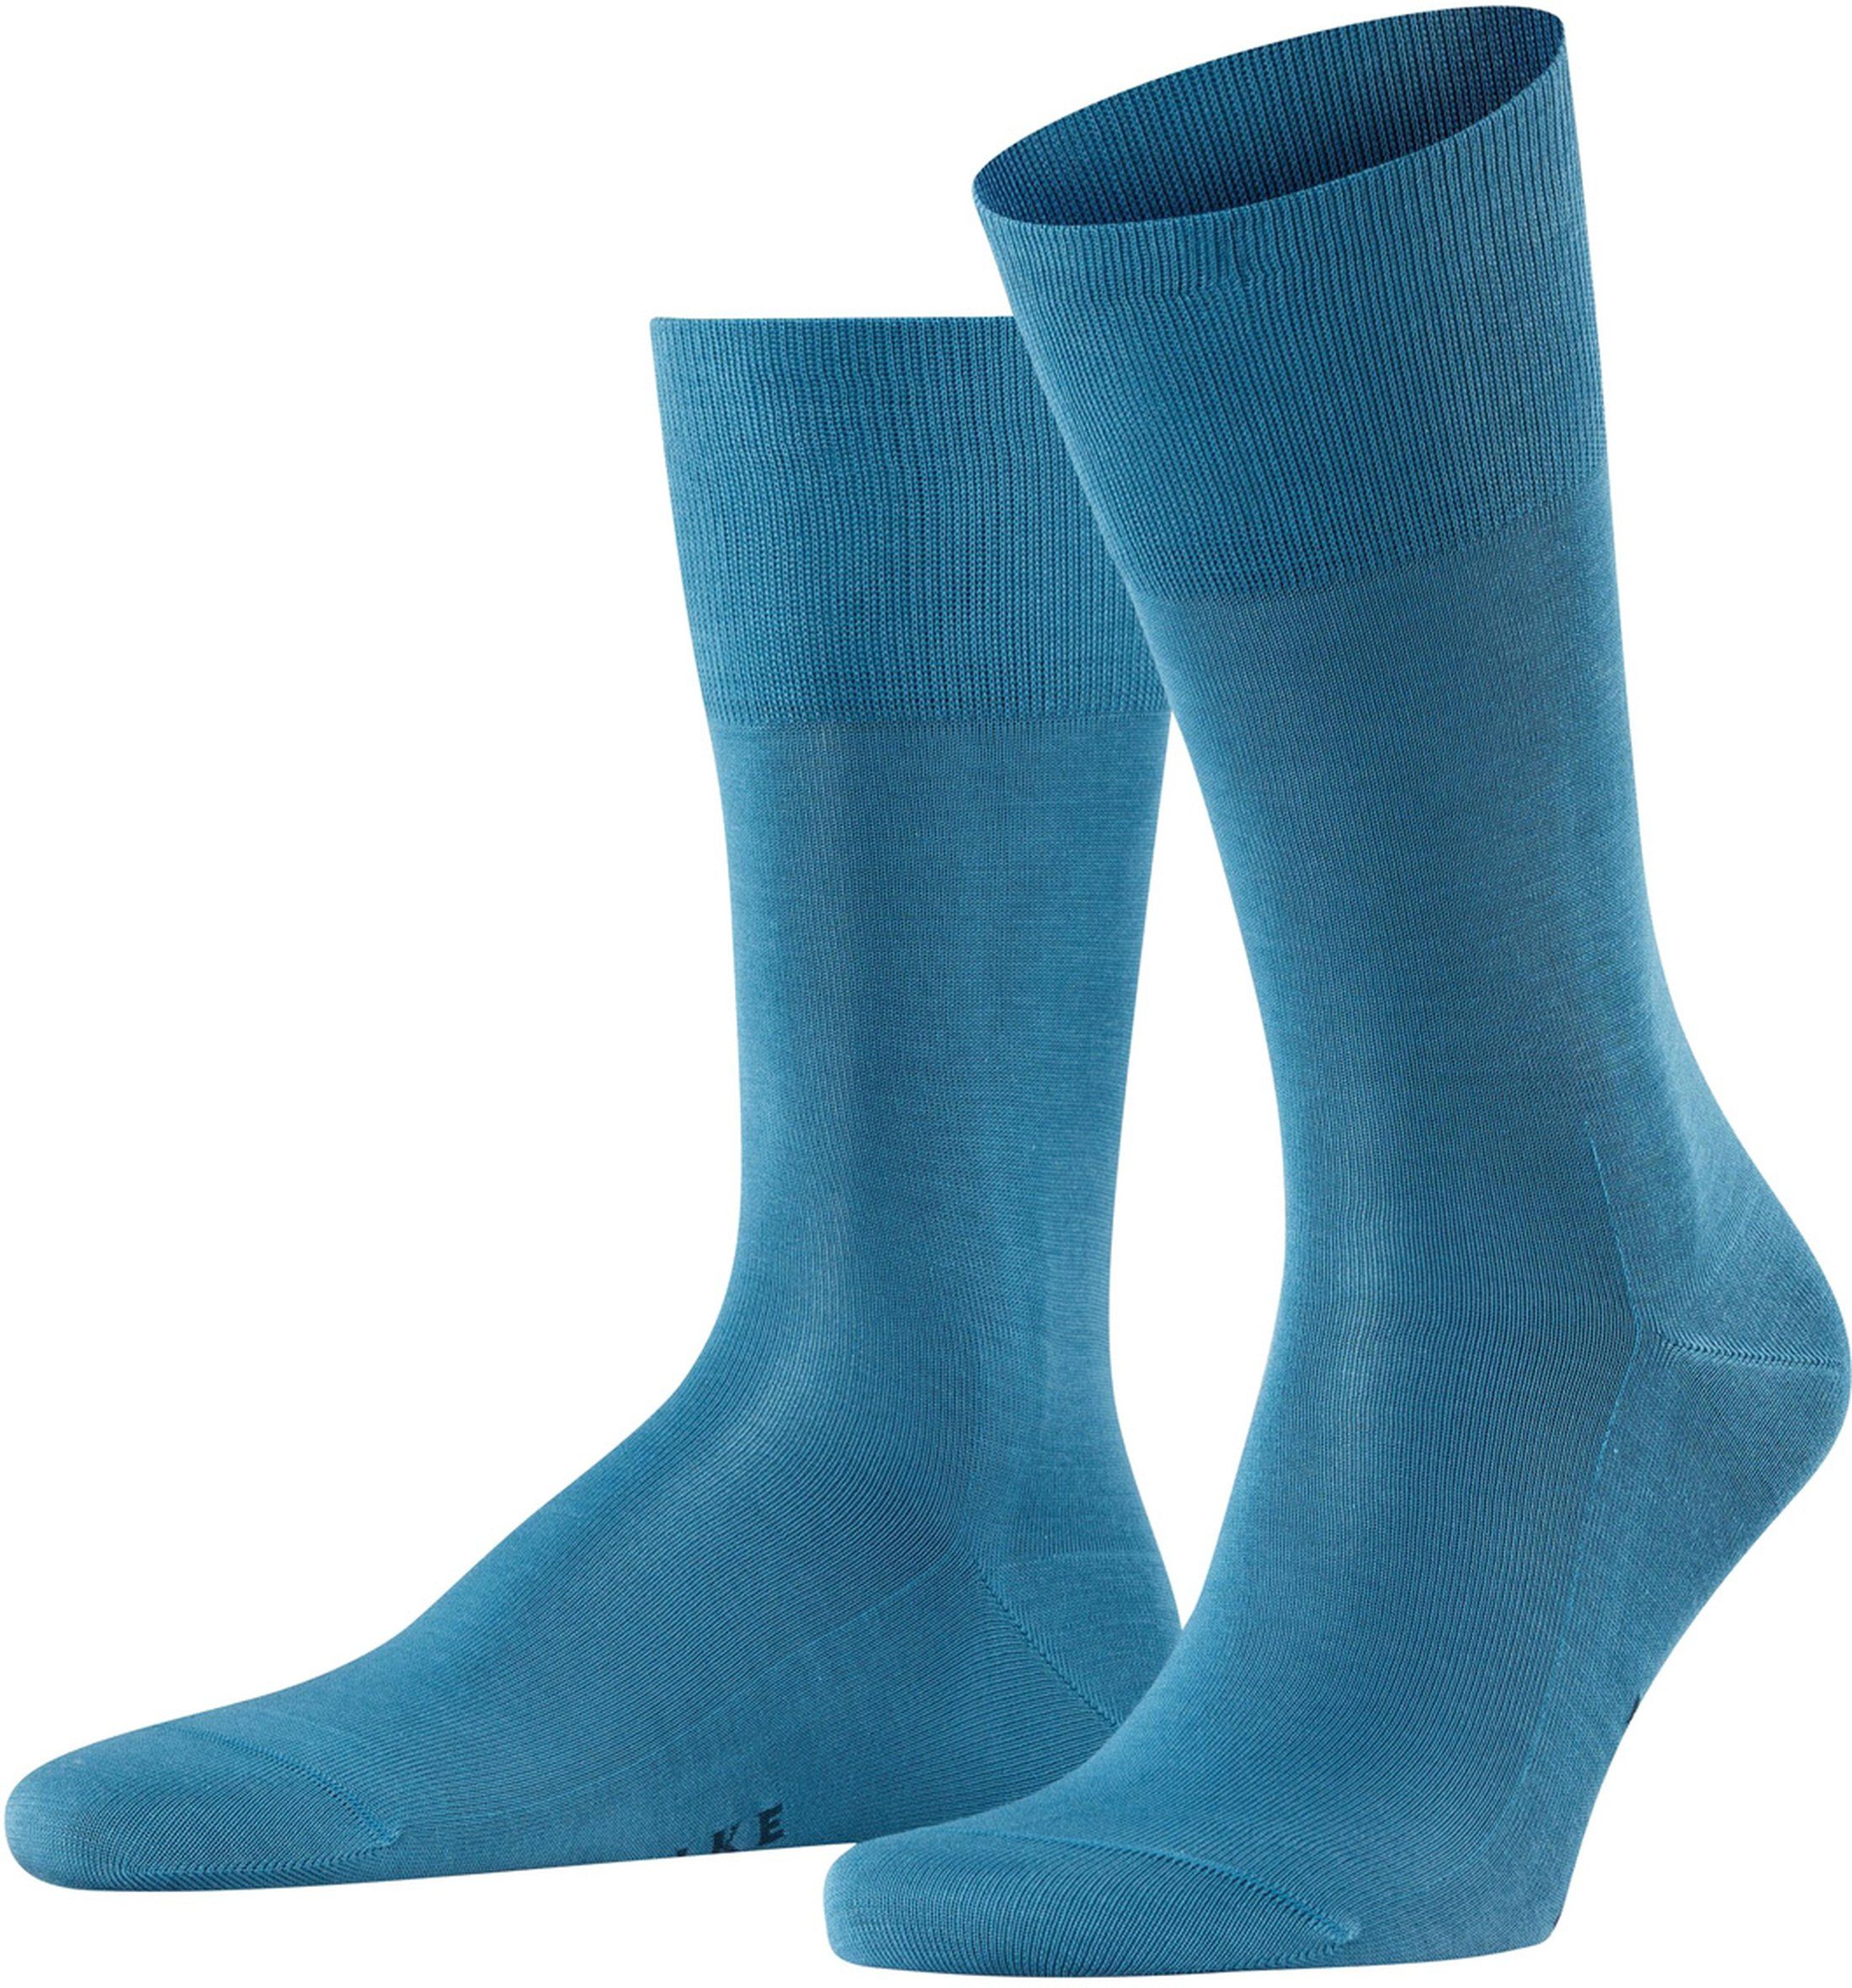 Falke Tiago Socks 6326 Blue size 41-42